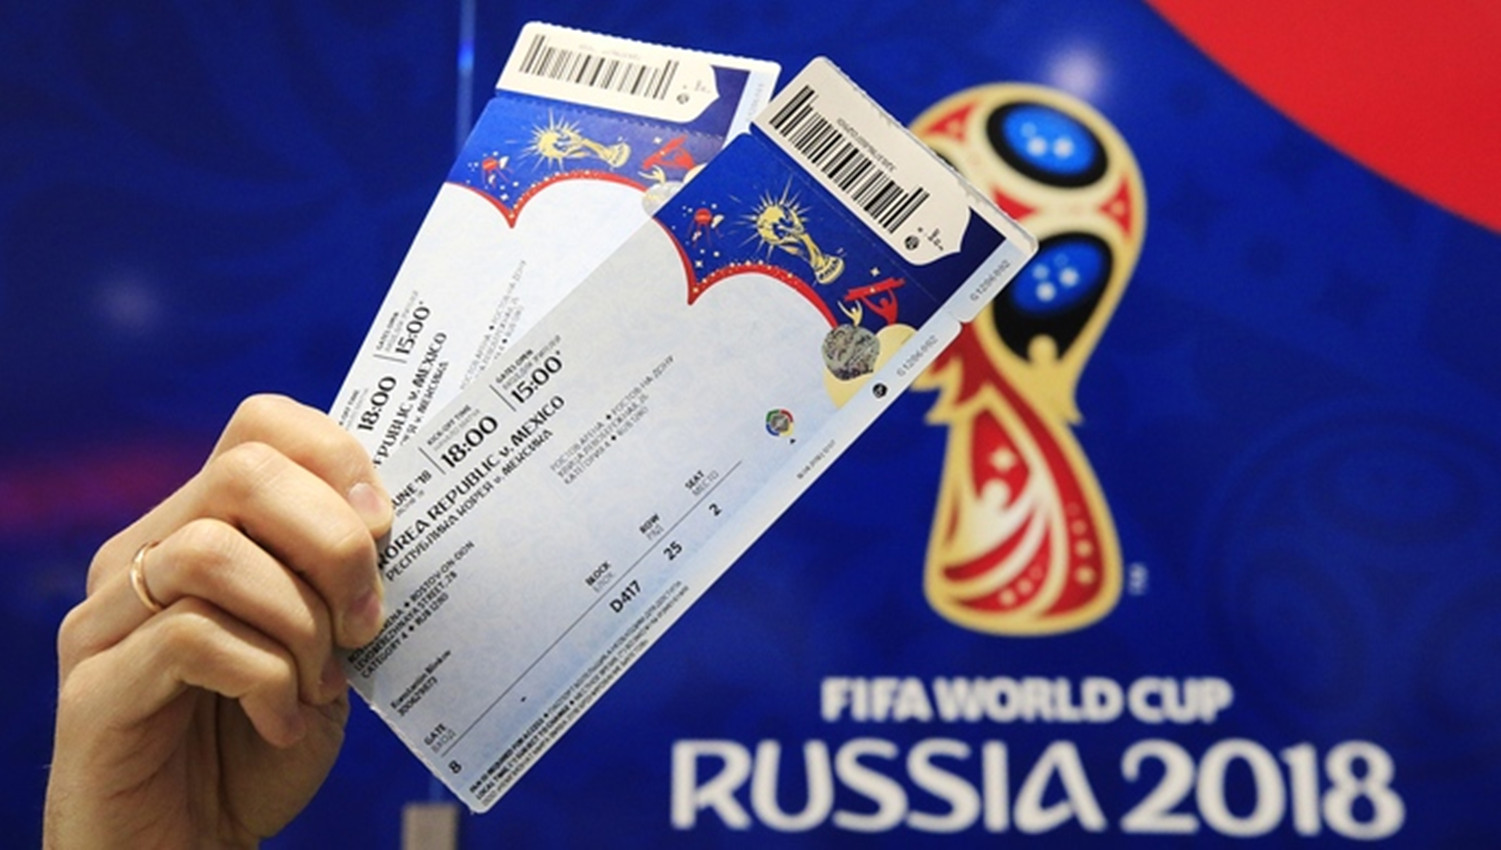 在中国有很多的人喜欢看足球,这届的世界杯已经在俄罗斯拉开了帷幕